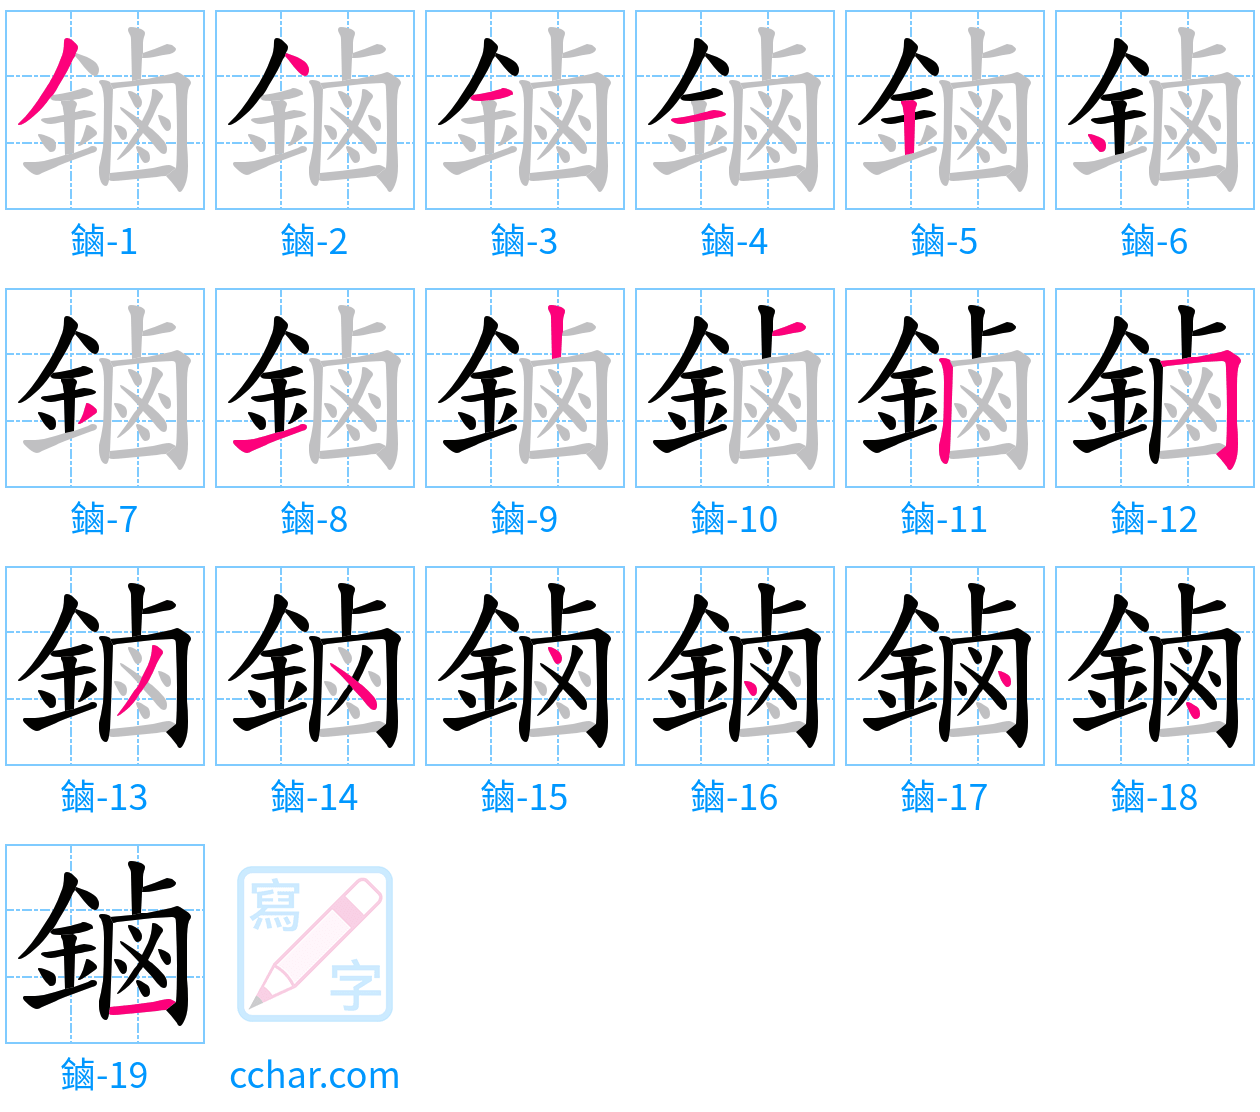 鏀 stroke order step-by-step diagram